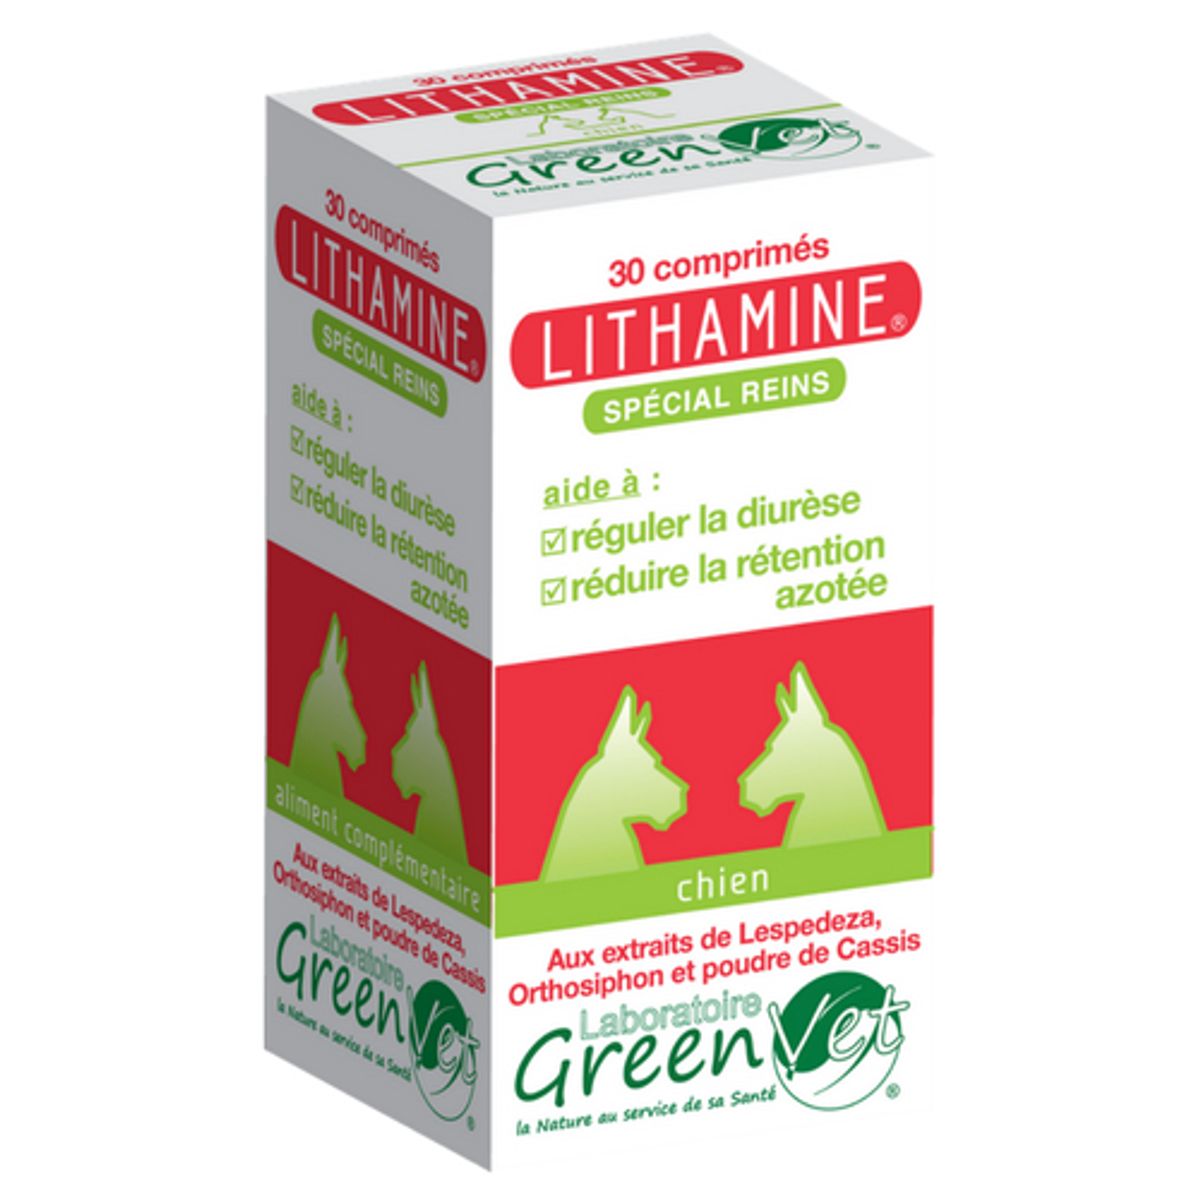 Complément alimentaire pour chien "Lithamine" - Greenvet